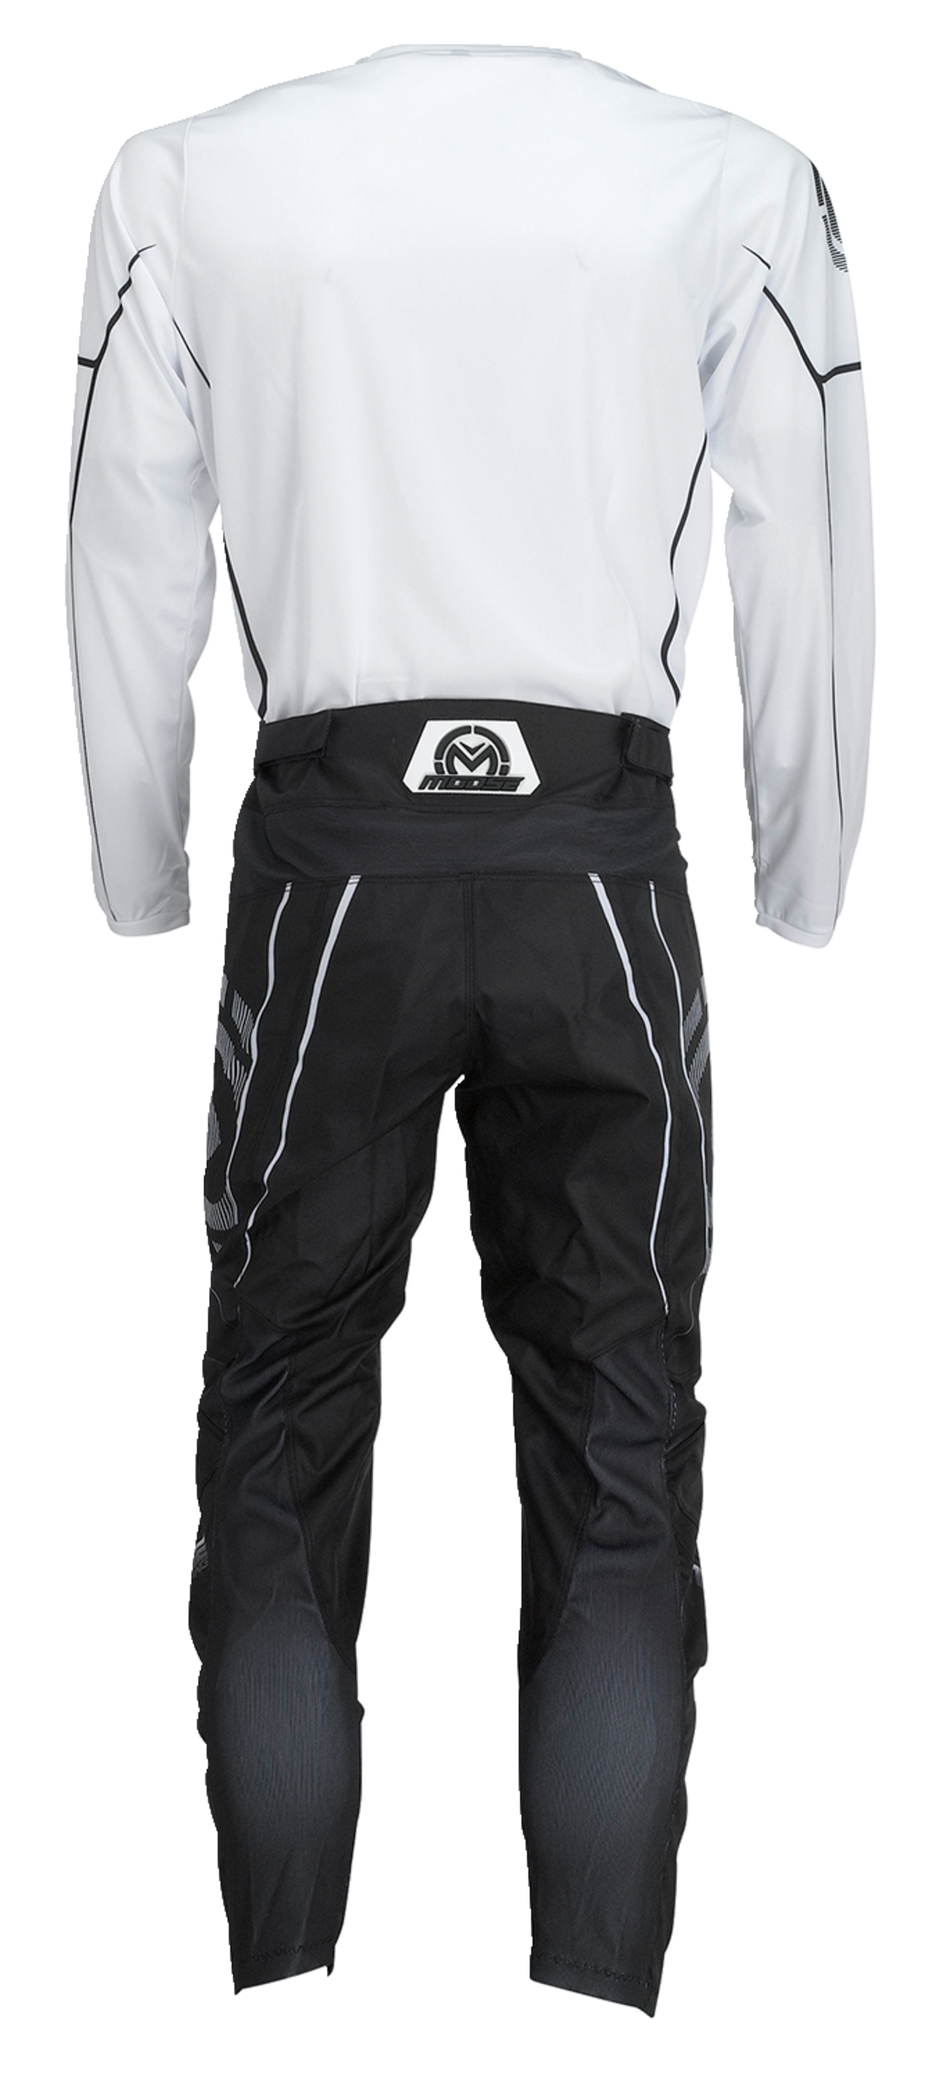 MOOSE RACING Qualifier® Jersey - Black/White - XL 2910-7191